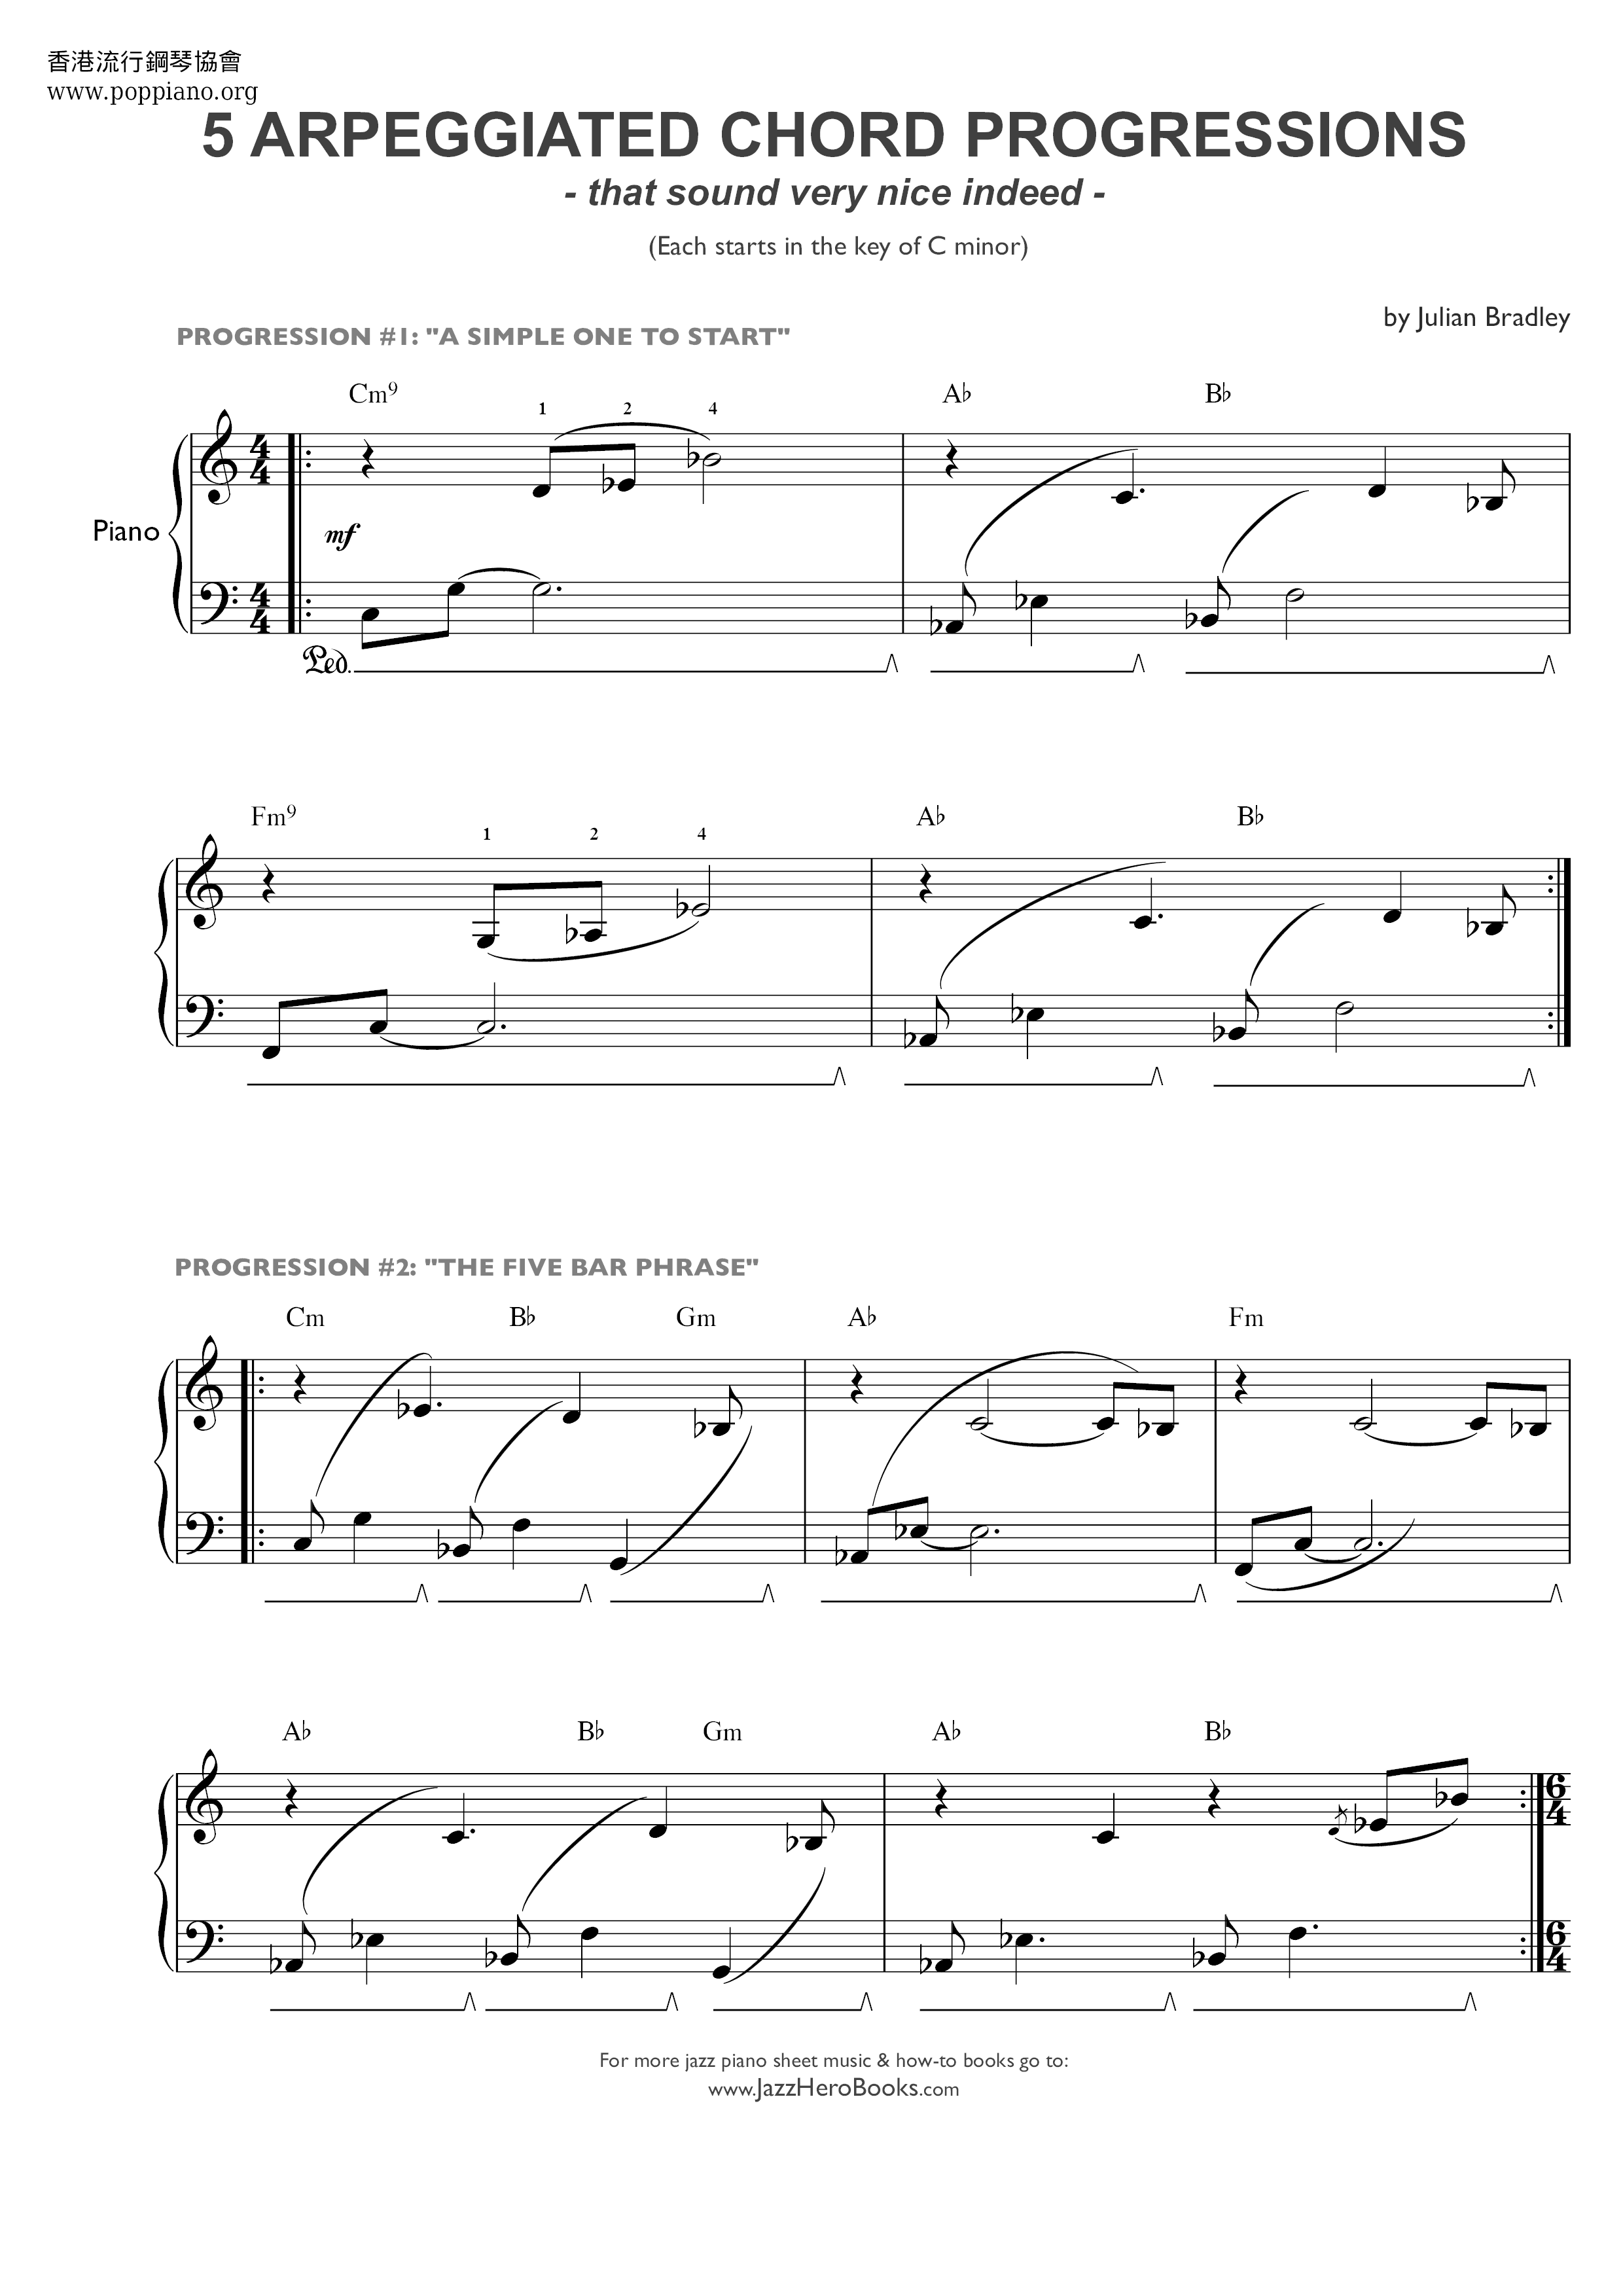 5 Arpeggiated Chord Progressions Score